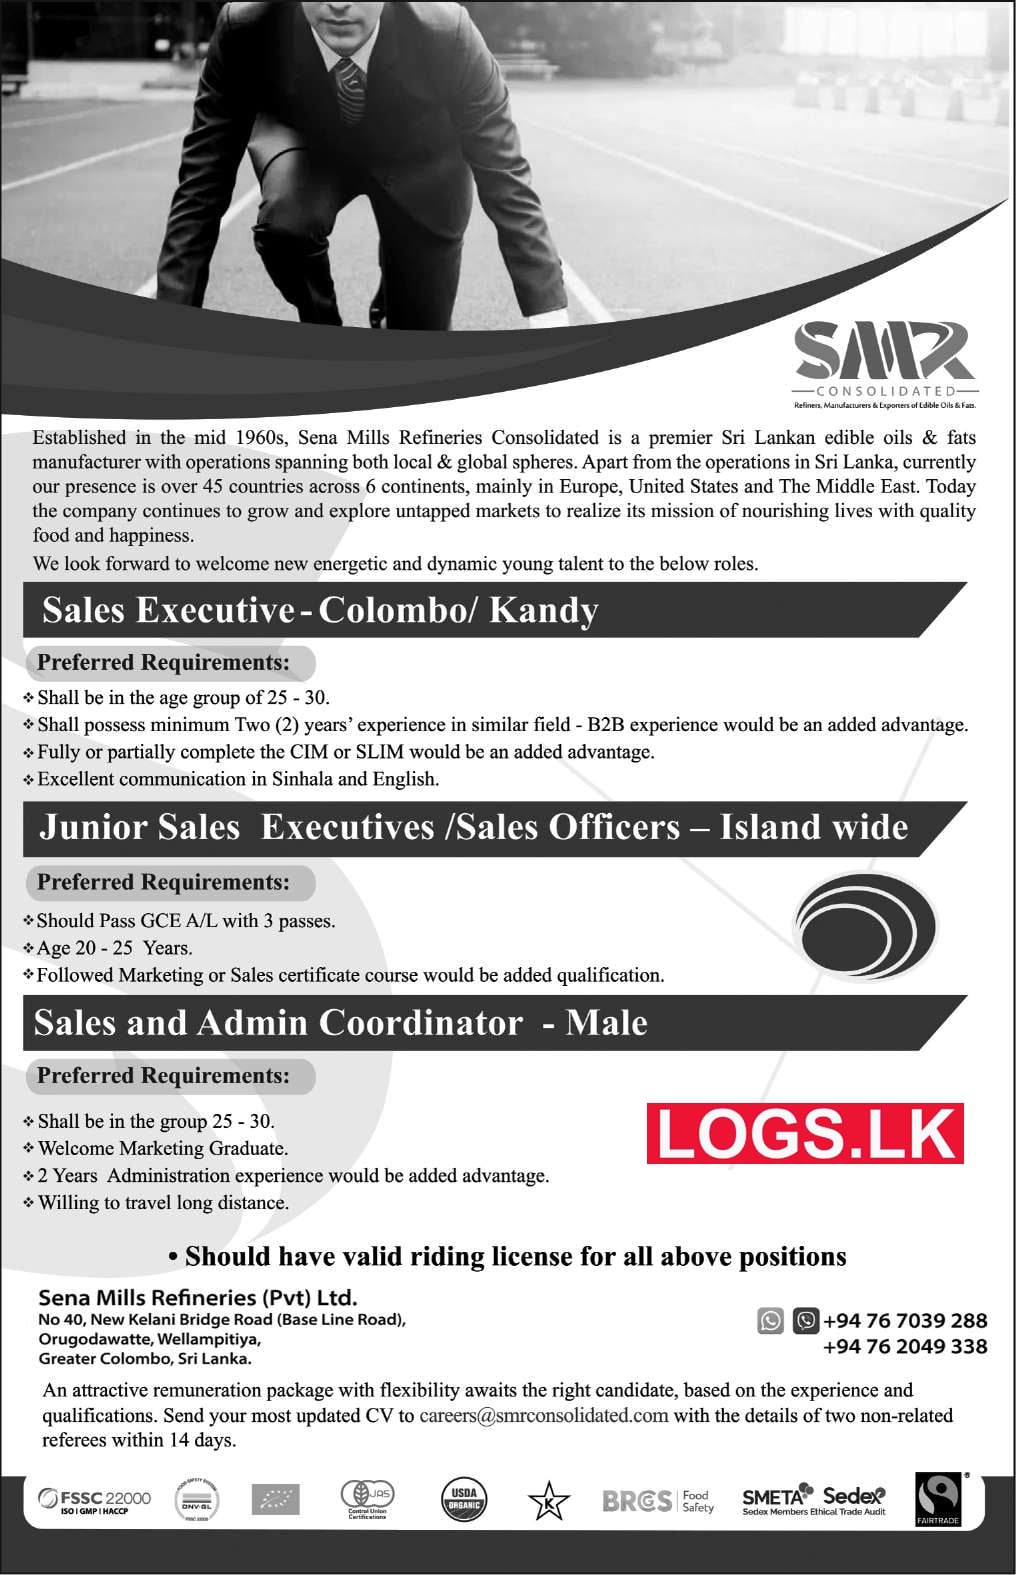 Sena Mills Refineries (Pvt) Ltd Job Vacancies in Sri Lanka Company Sri Lanka